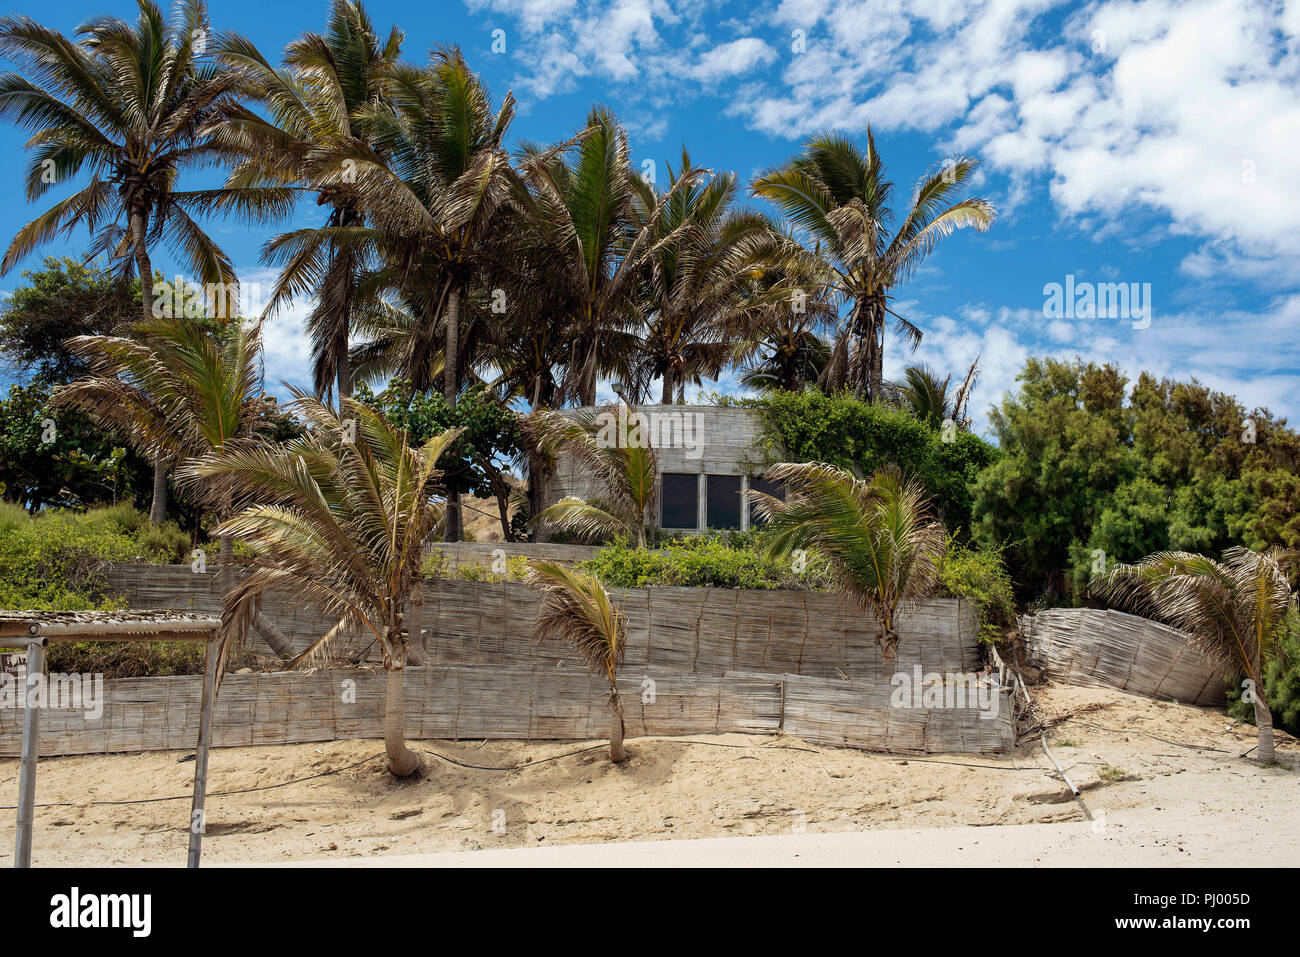 Beach bungalow and palm trees. Las Pocitas beach. Mancora, Piura region, Peru. Aug 2018 Stock Photo